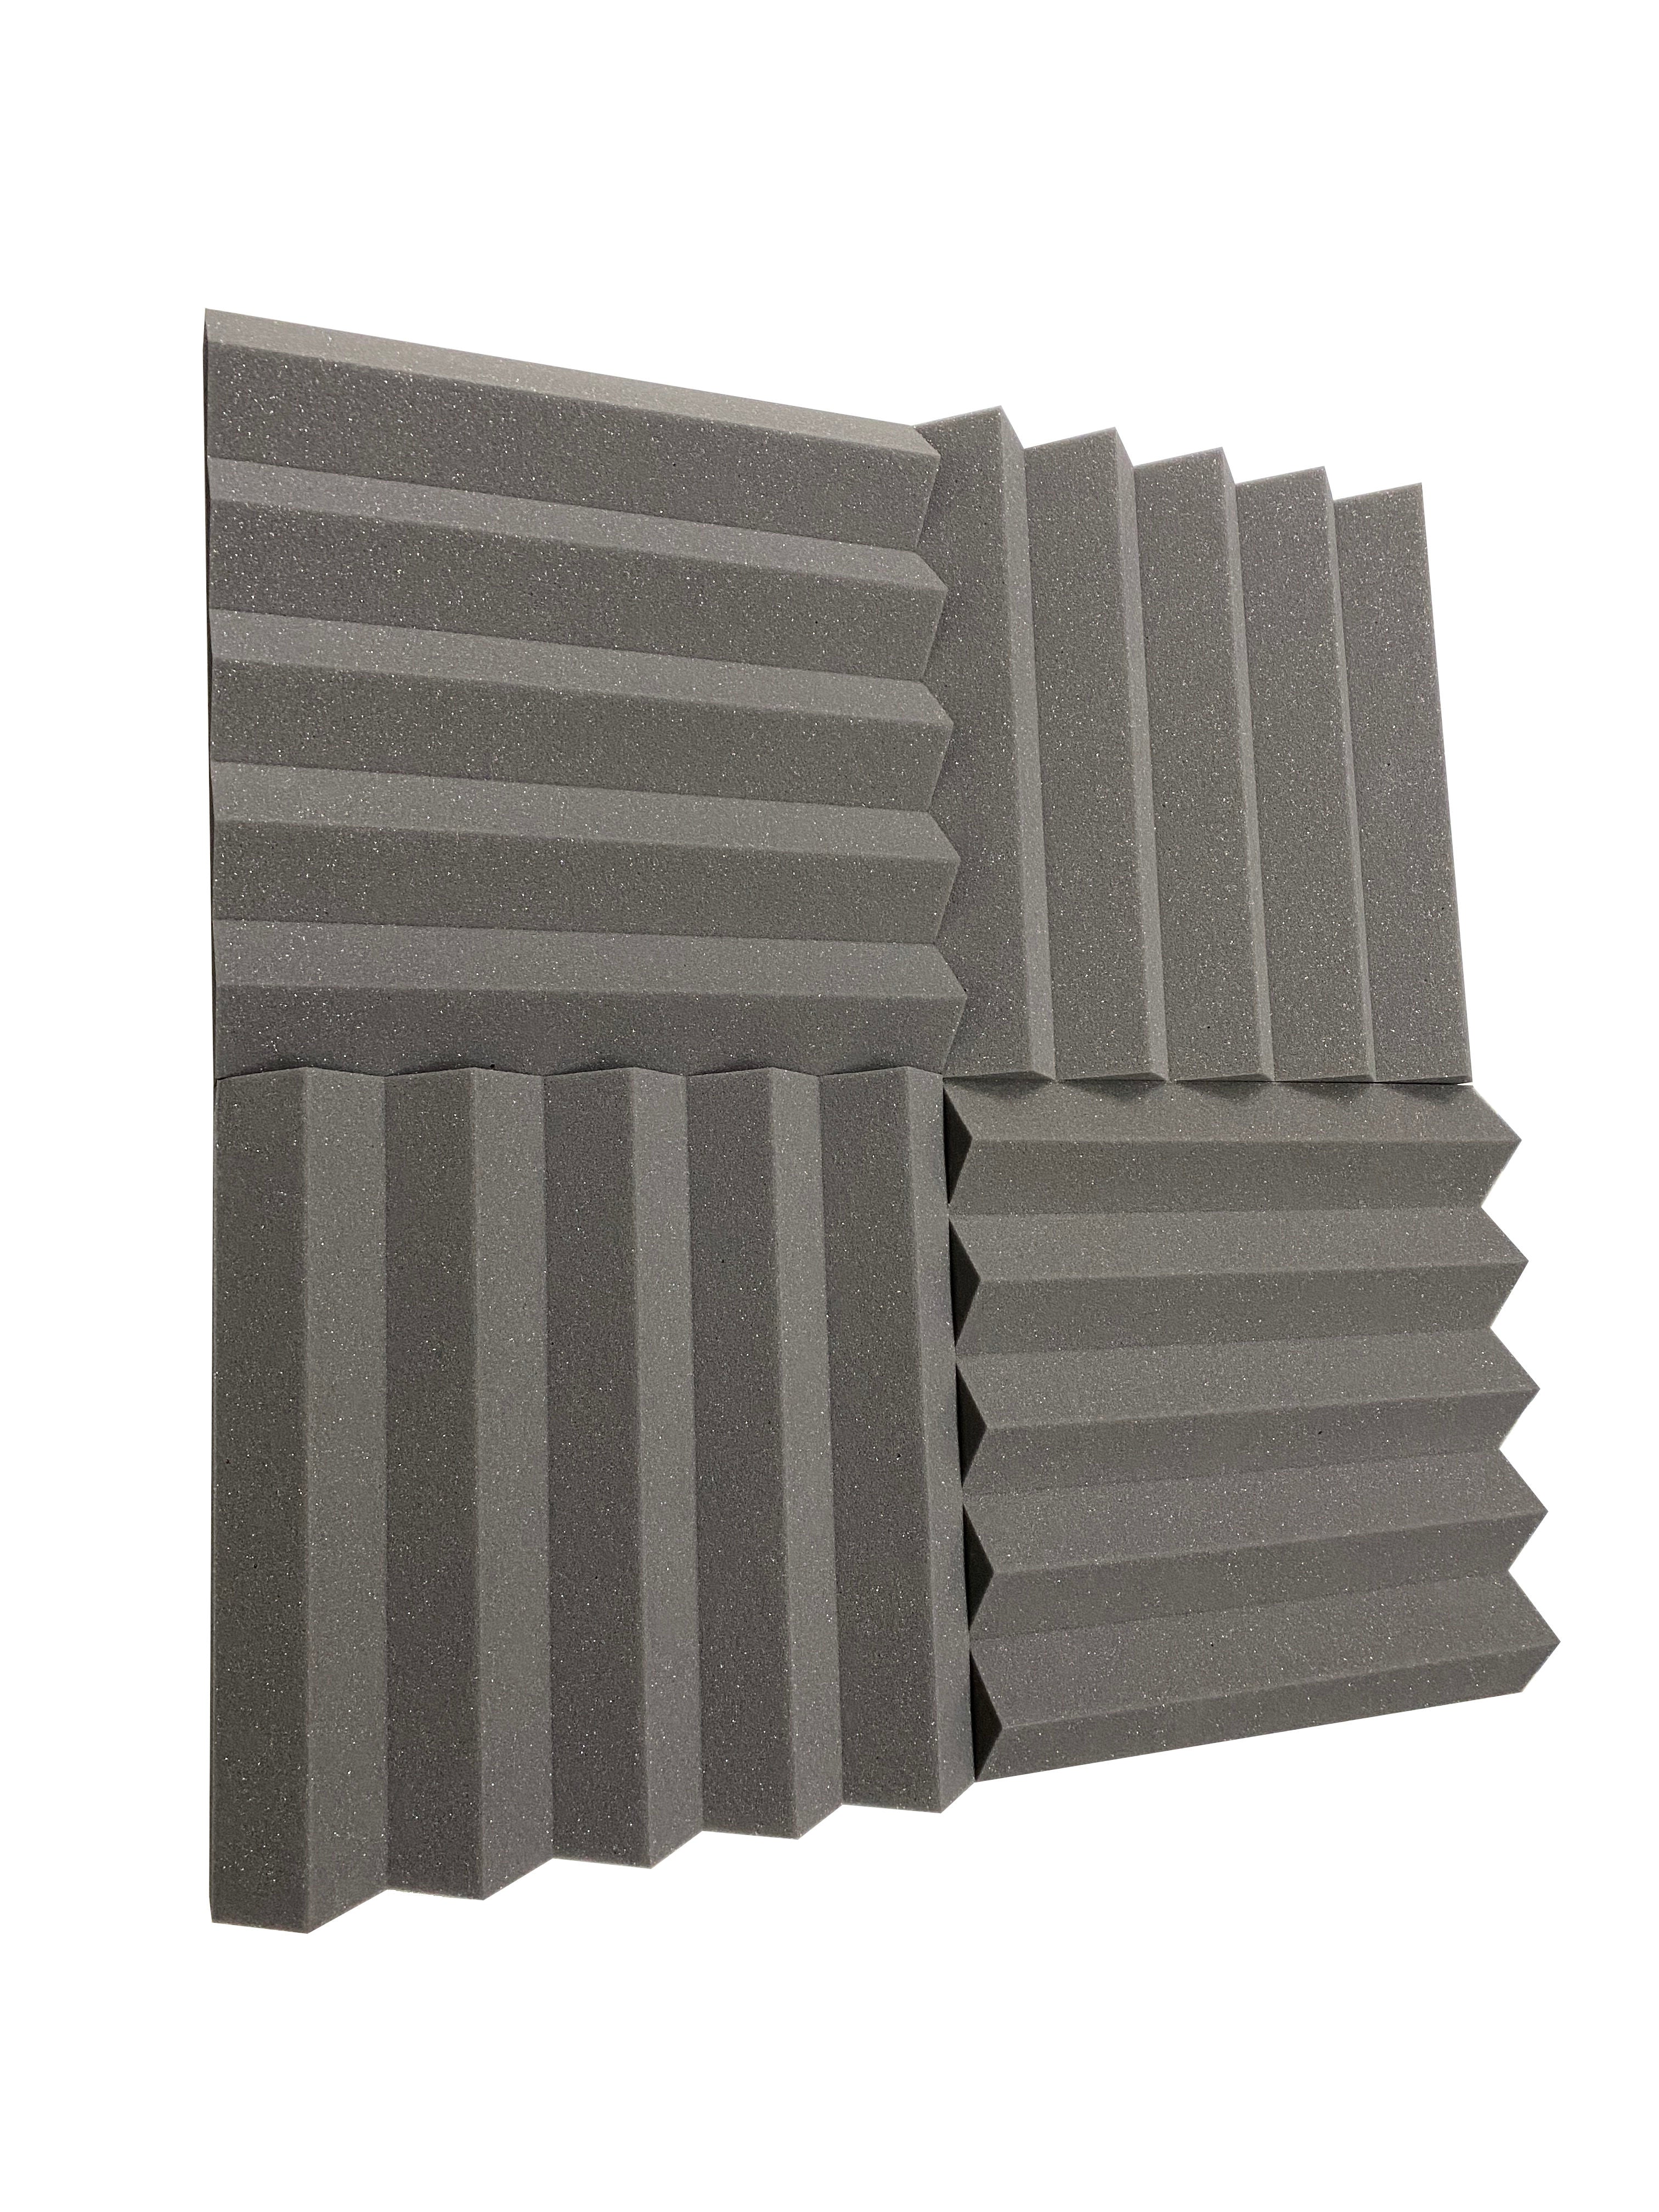 Buy mid-grey Wedge PRO Combo Acoustic Studio Foam Tile Kit